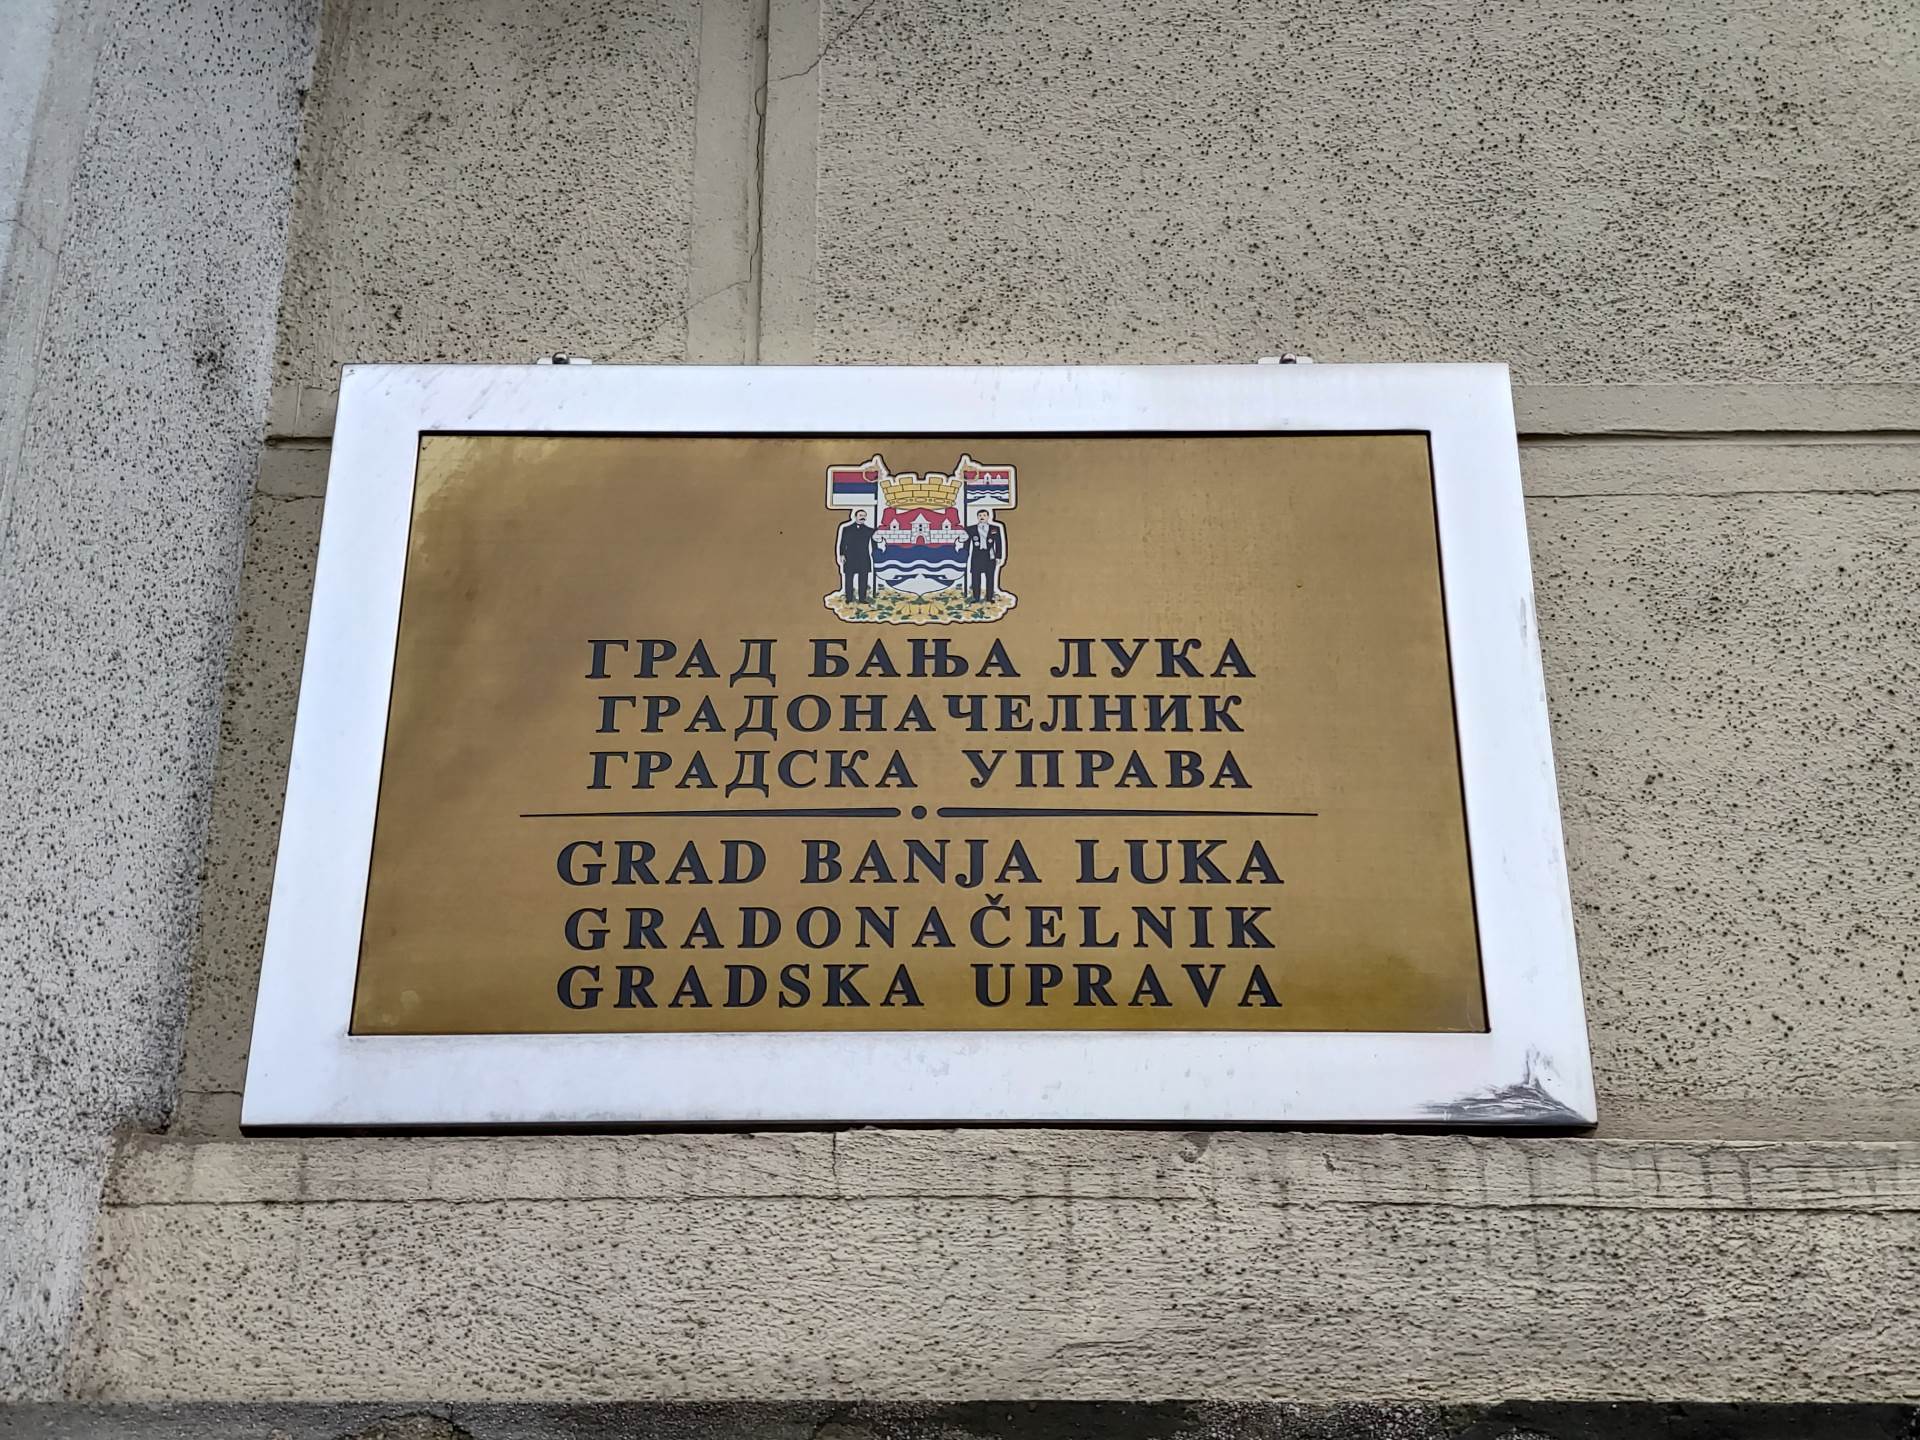  Gradska uprava Banjaluka: Smijenjen Slavko Davidović 